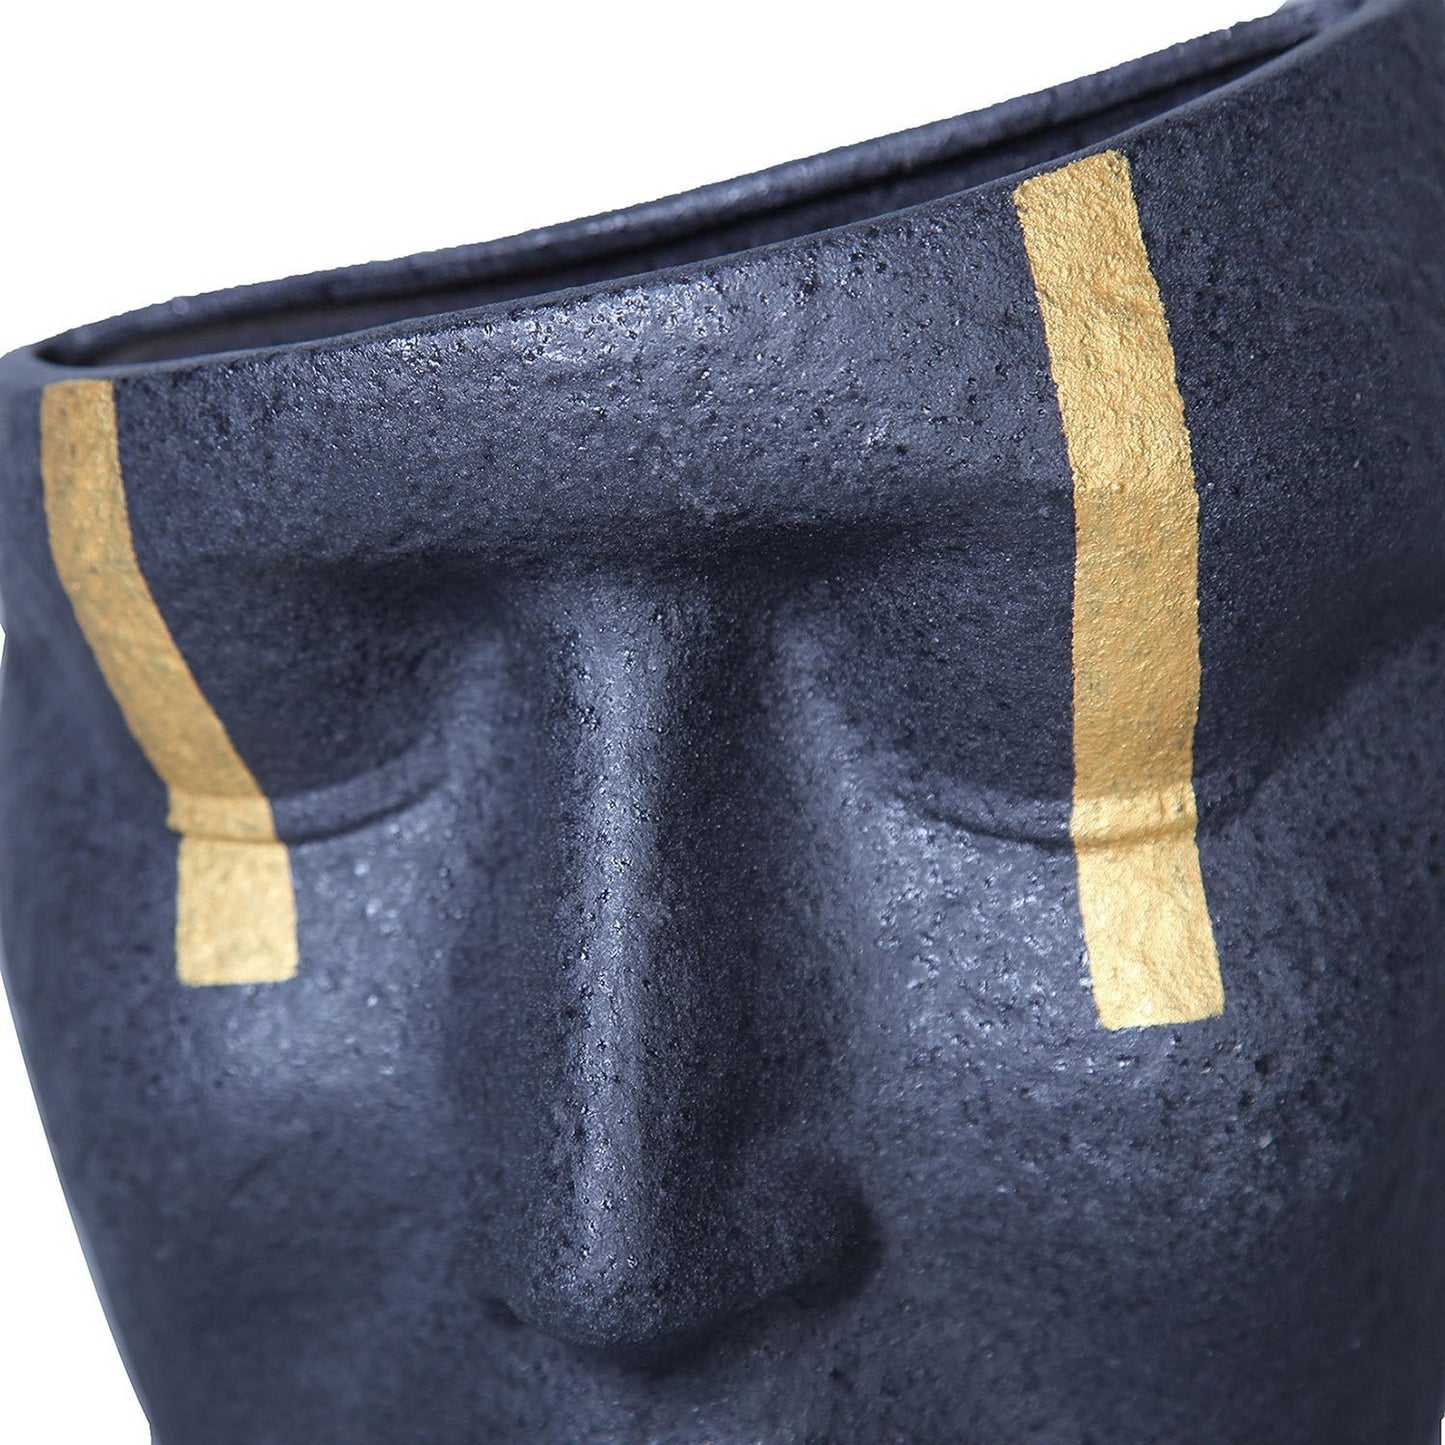 Ceramic Black & Gold Accent Face Sculpture Vase